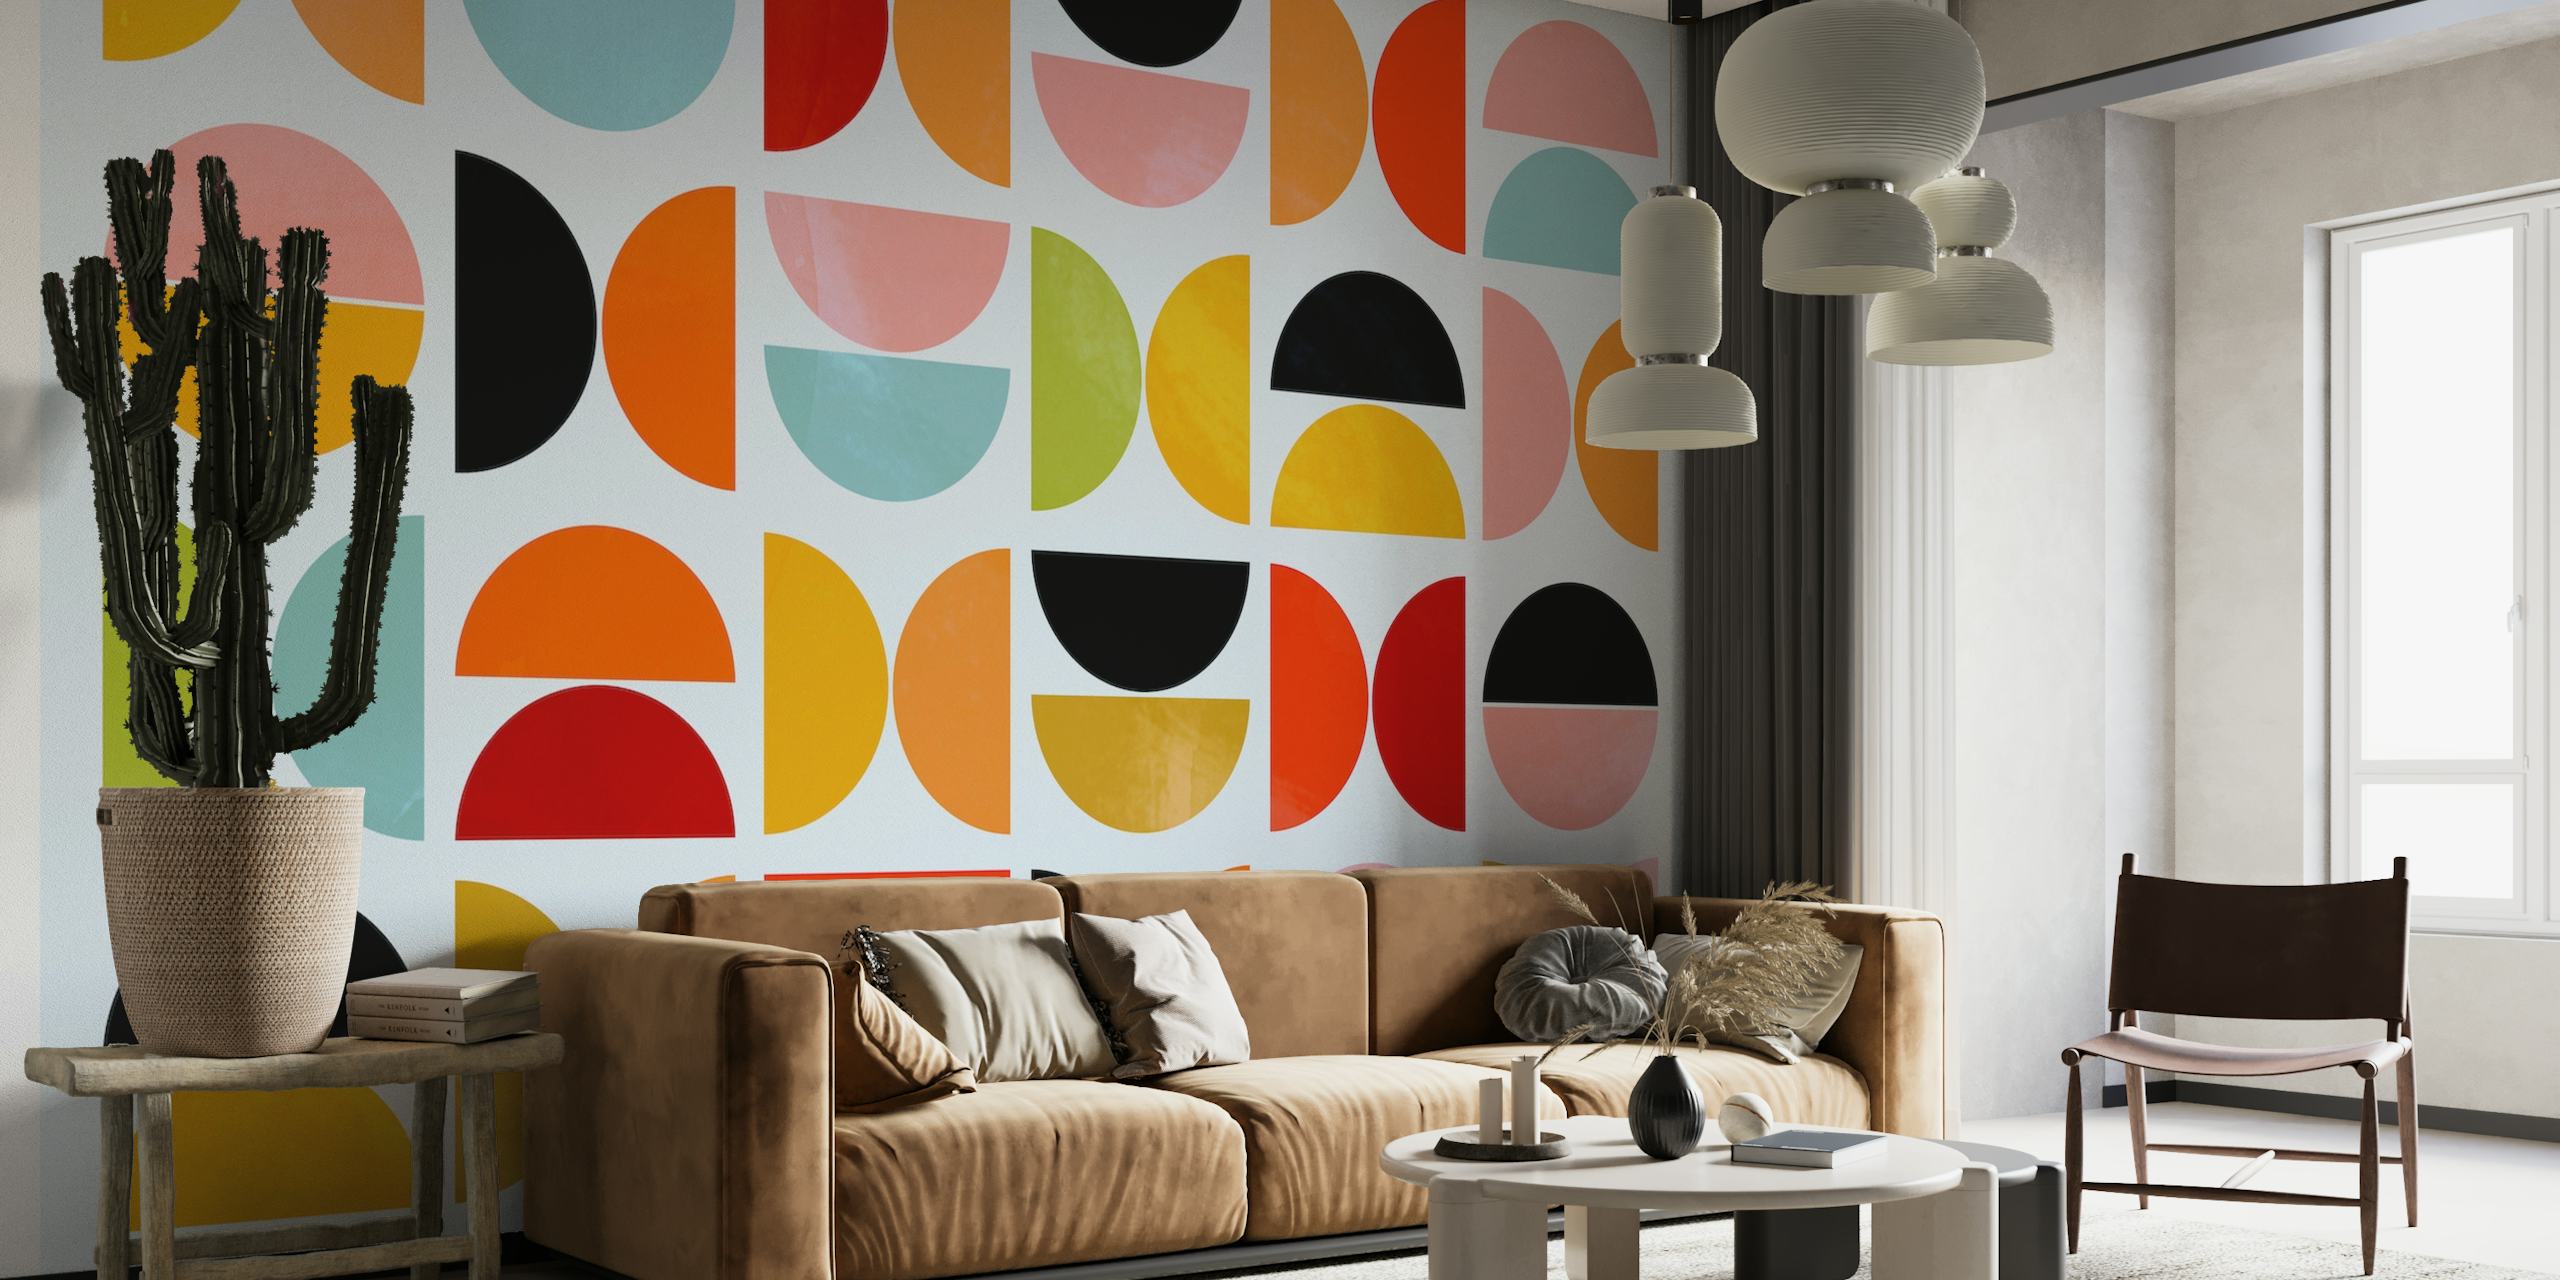 Levande geometriska former i en Bauhaus-inspirerad väggmålning.